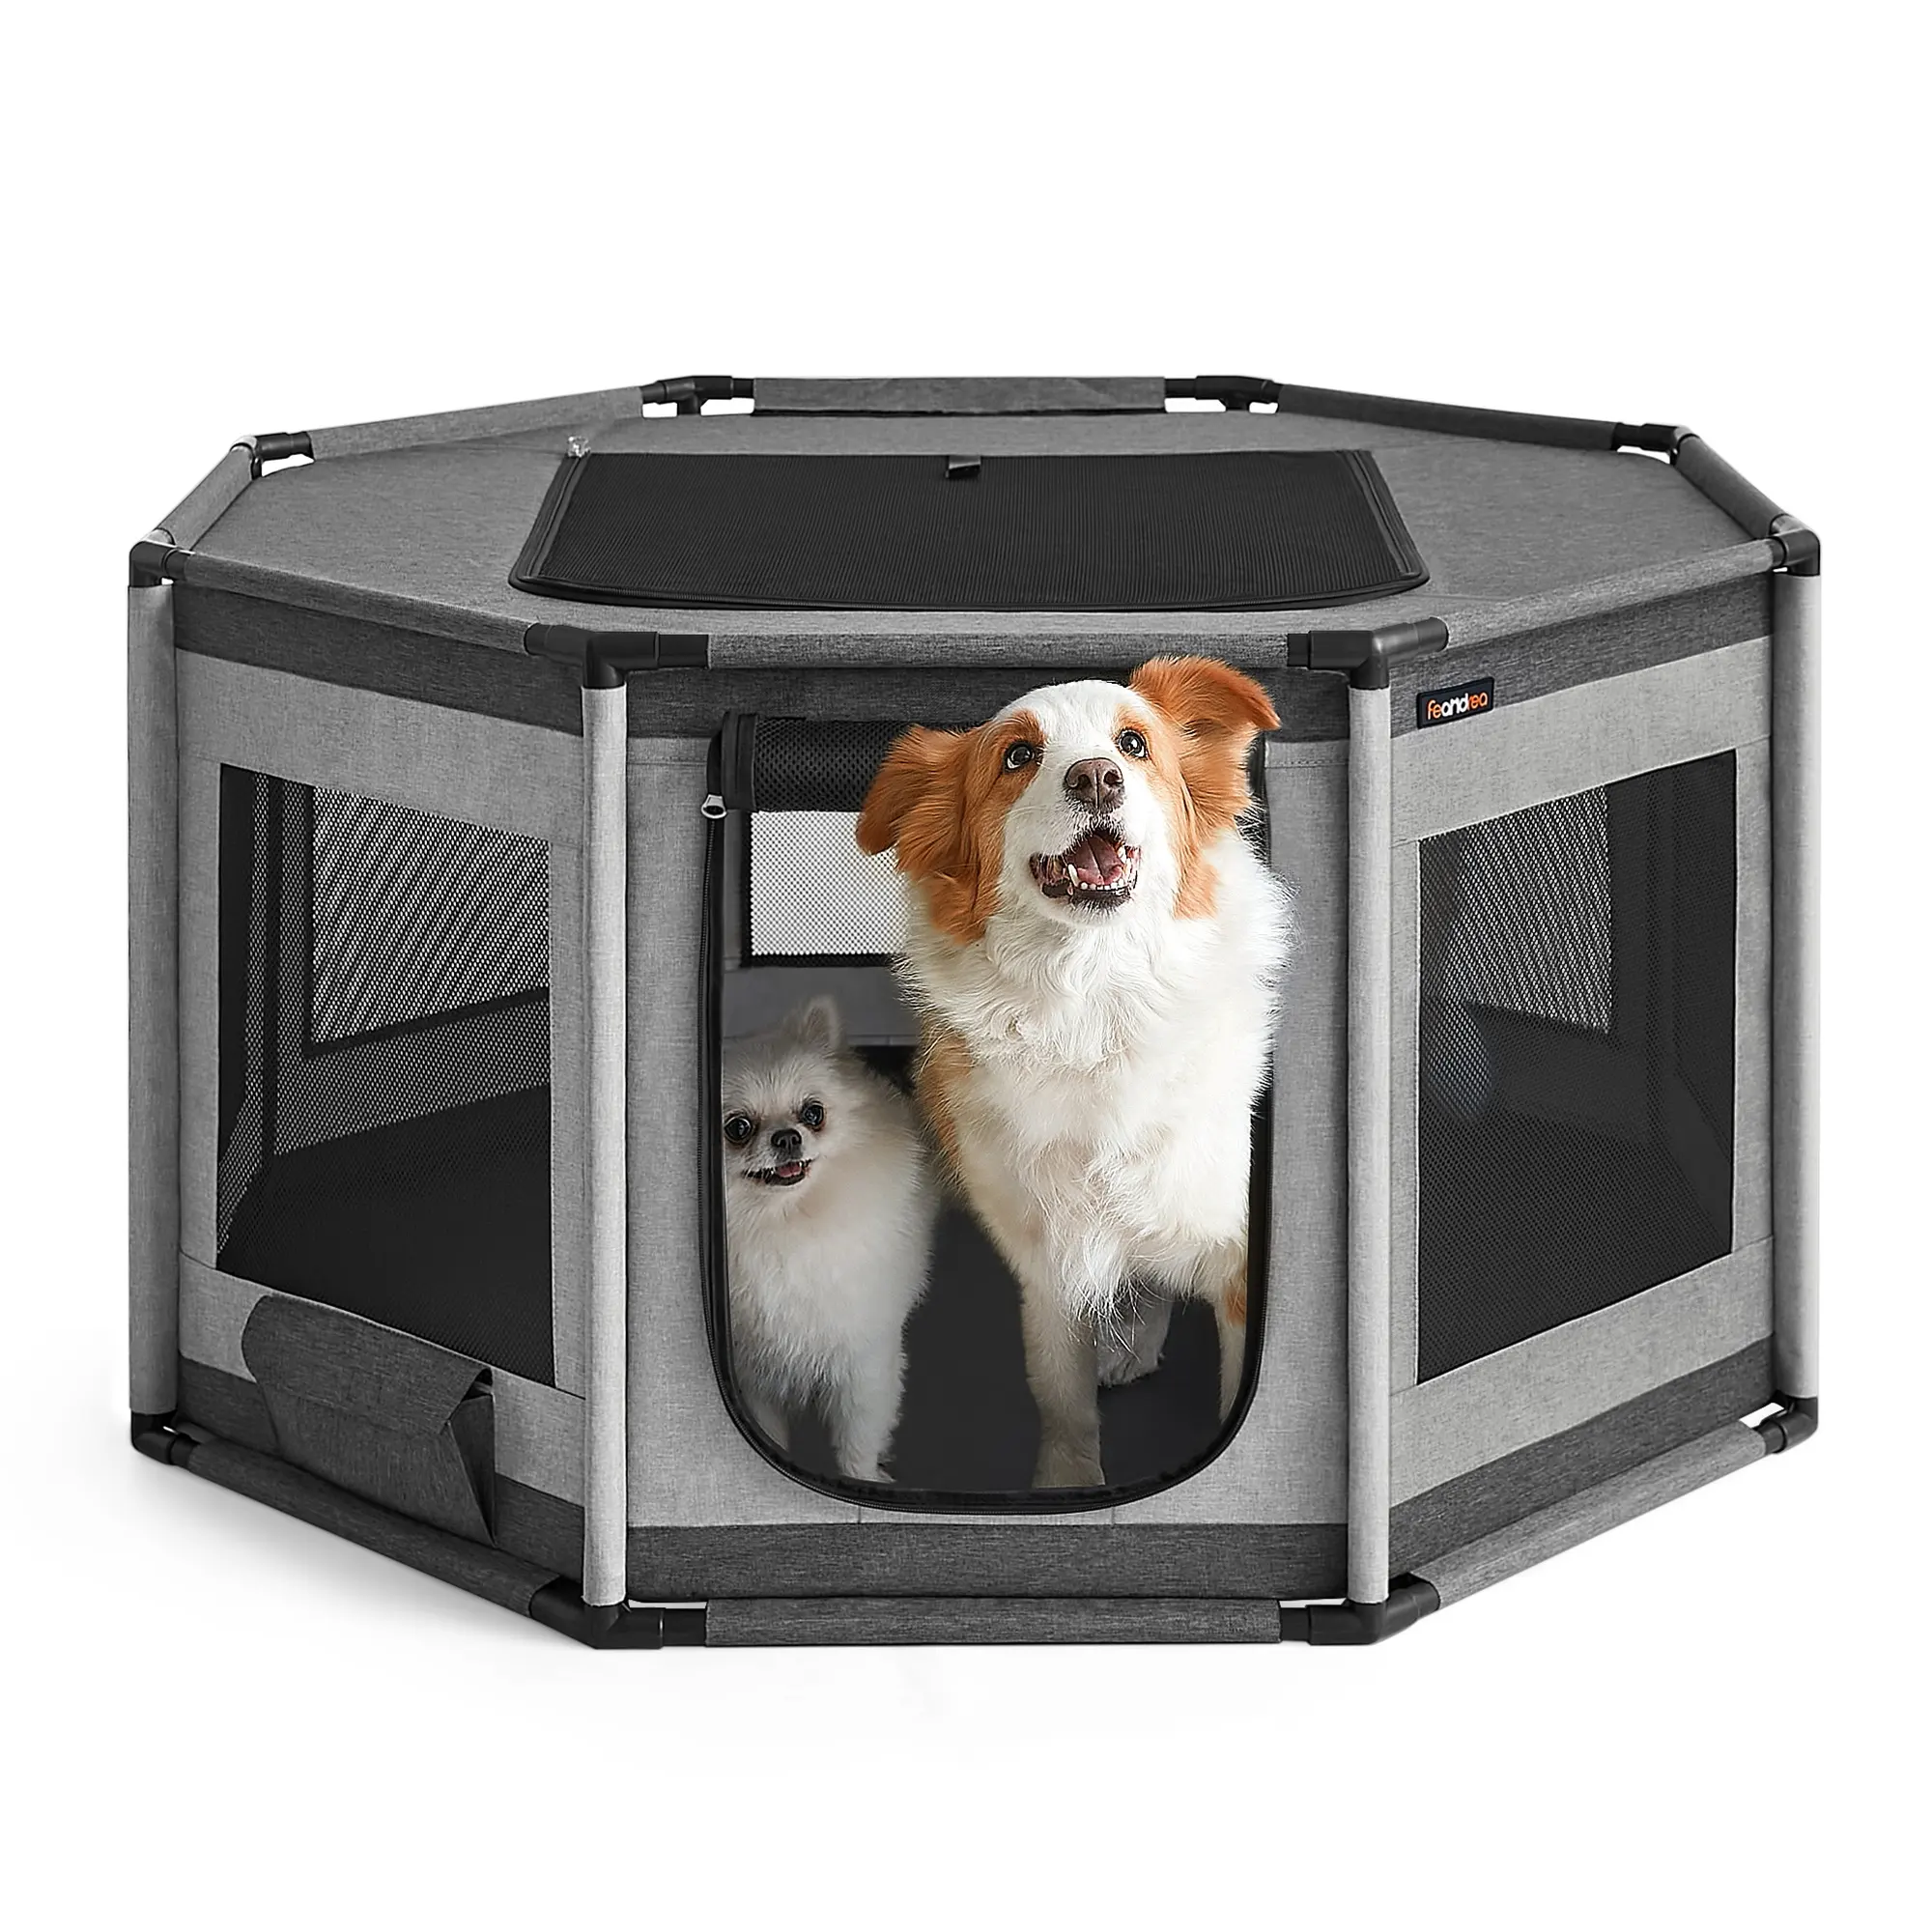 Feandrea tenda hewan peliharaan lipat portabel, rumah anjing dengan jendela jaring kain Oxford anak anjing Playpen oktagonal kandang anjing